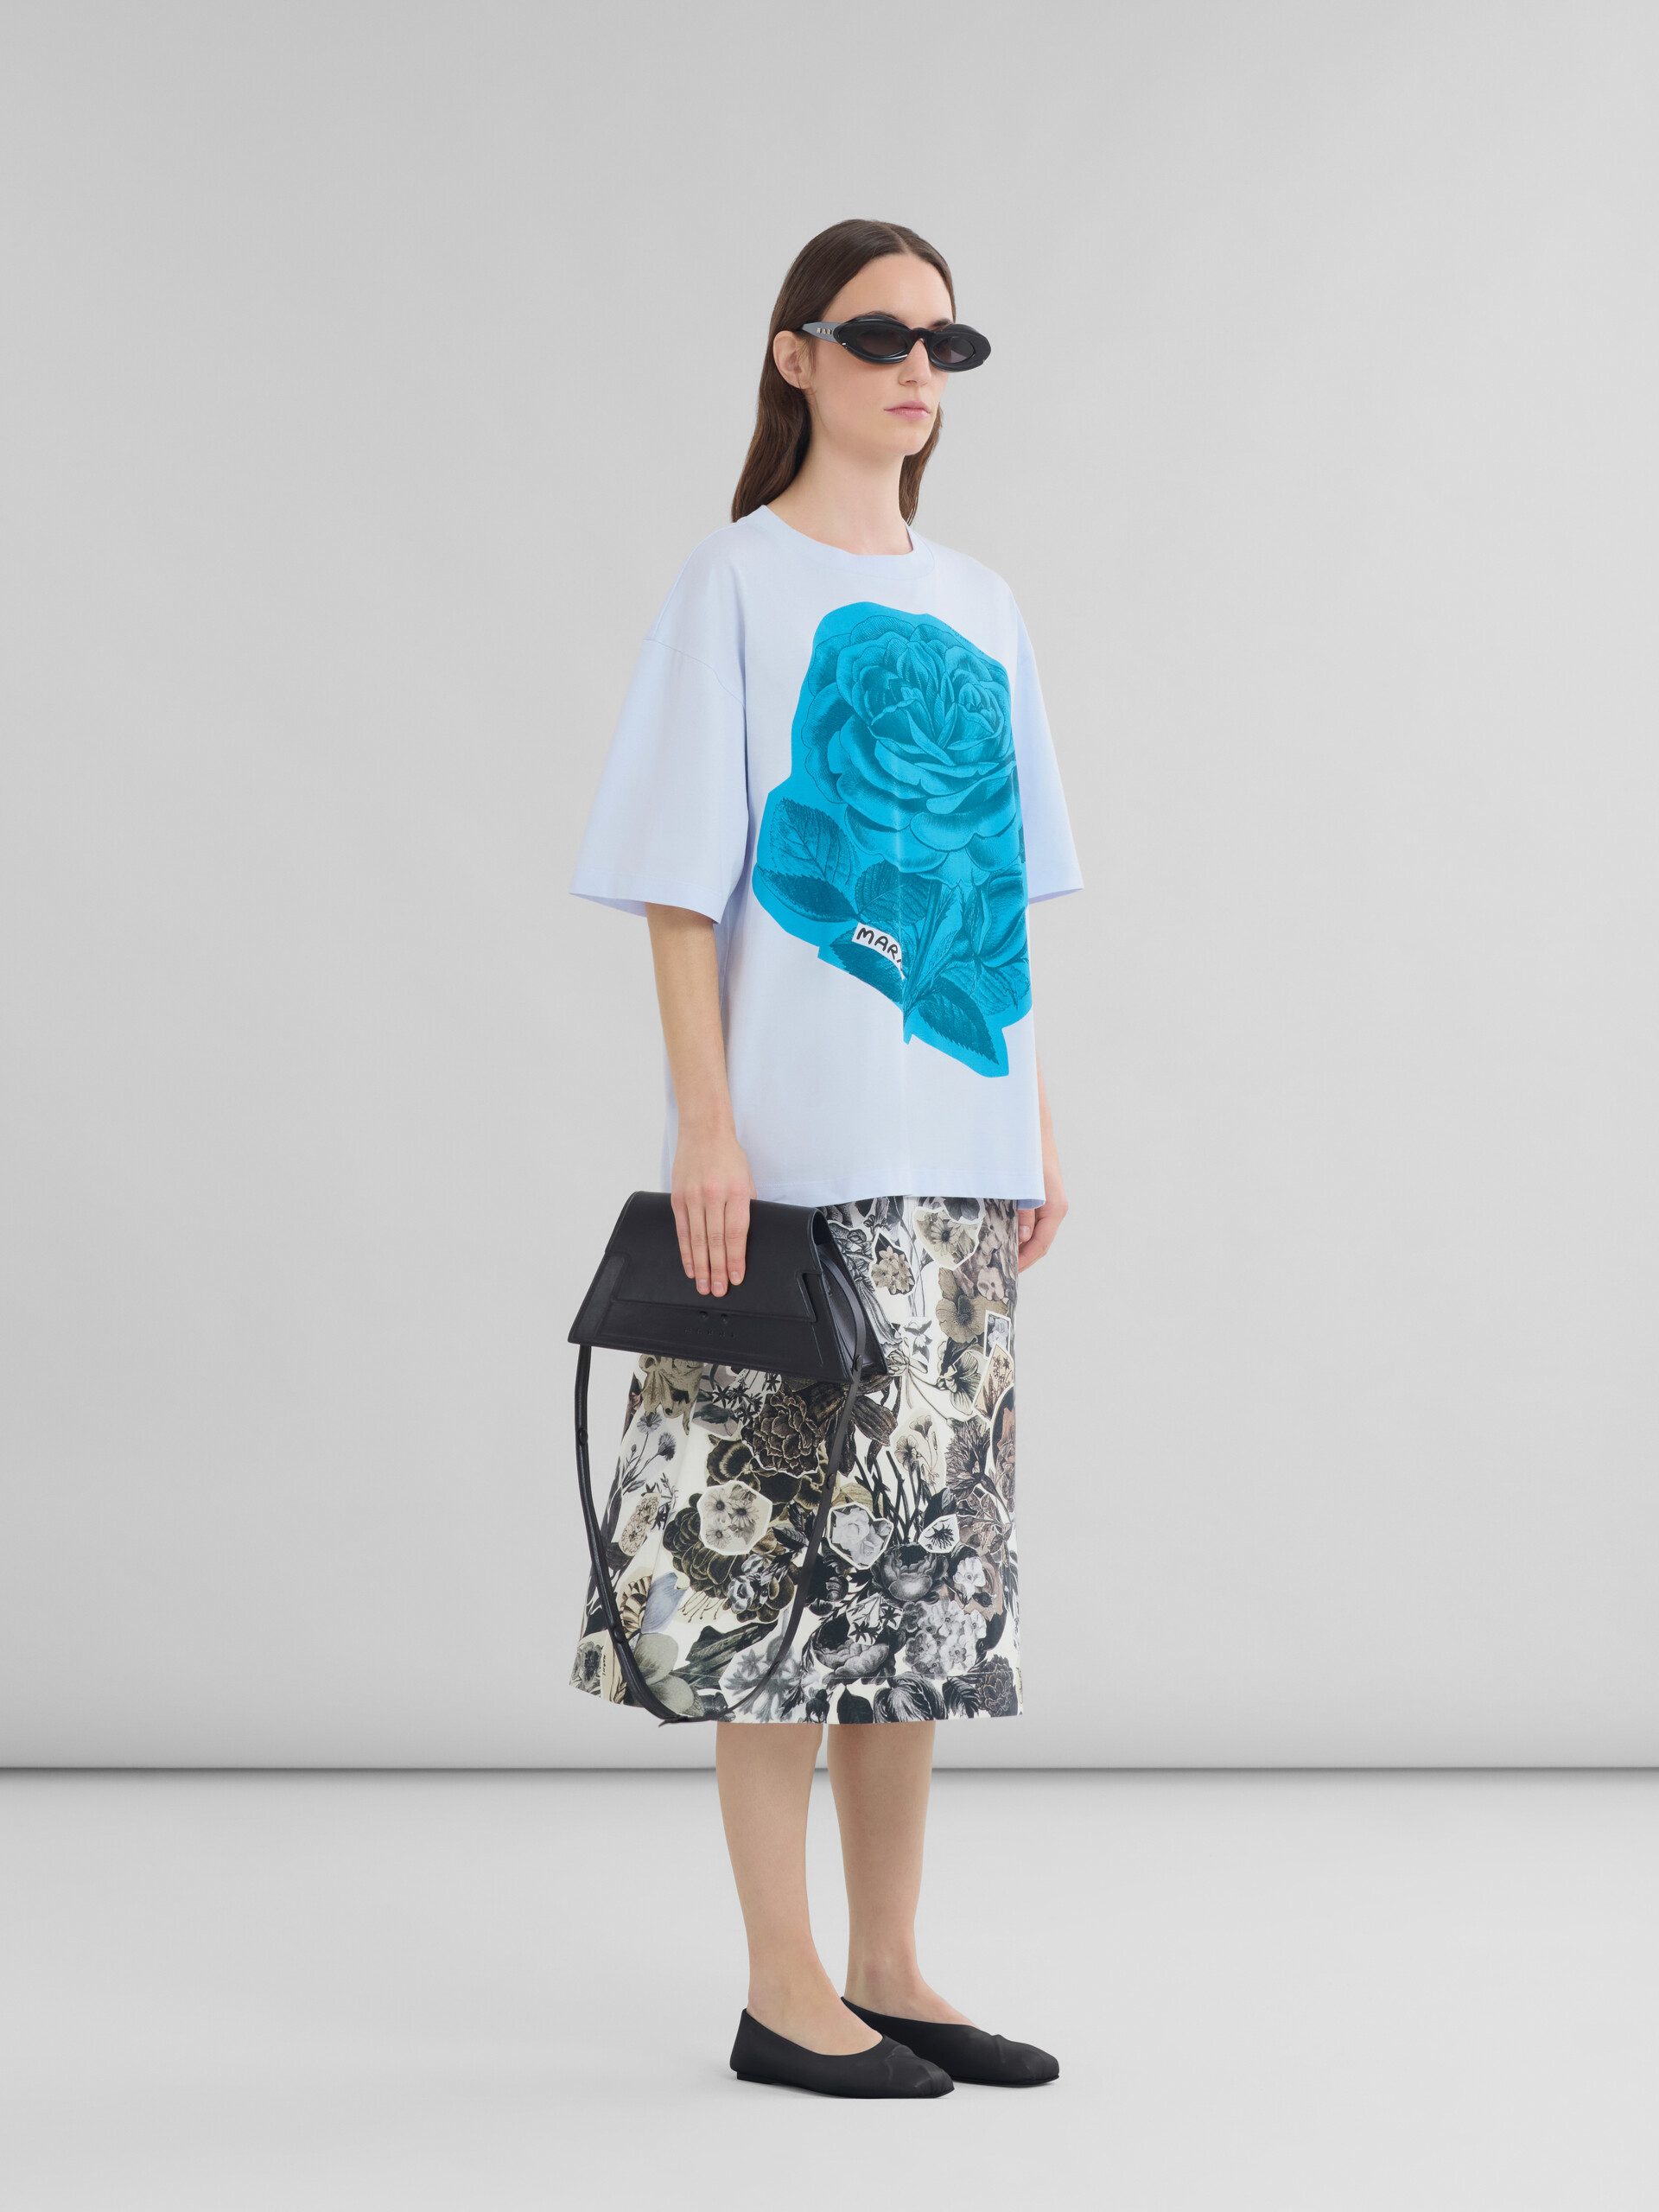 Blaues T-Shirt aus Baumwolle mit Maxi-Blumen-Print - T-shirts - Image 5